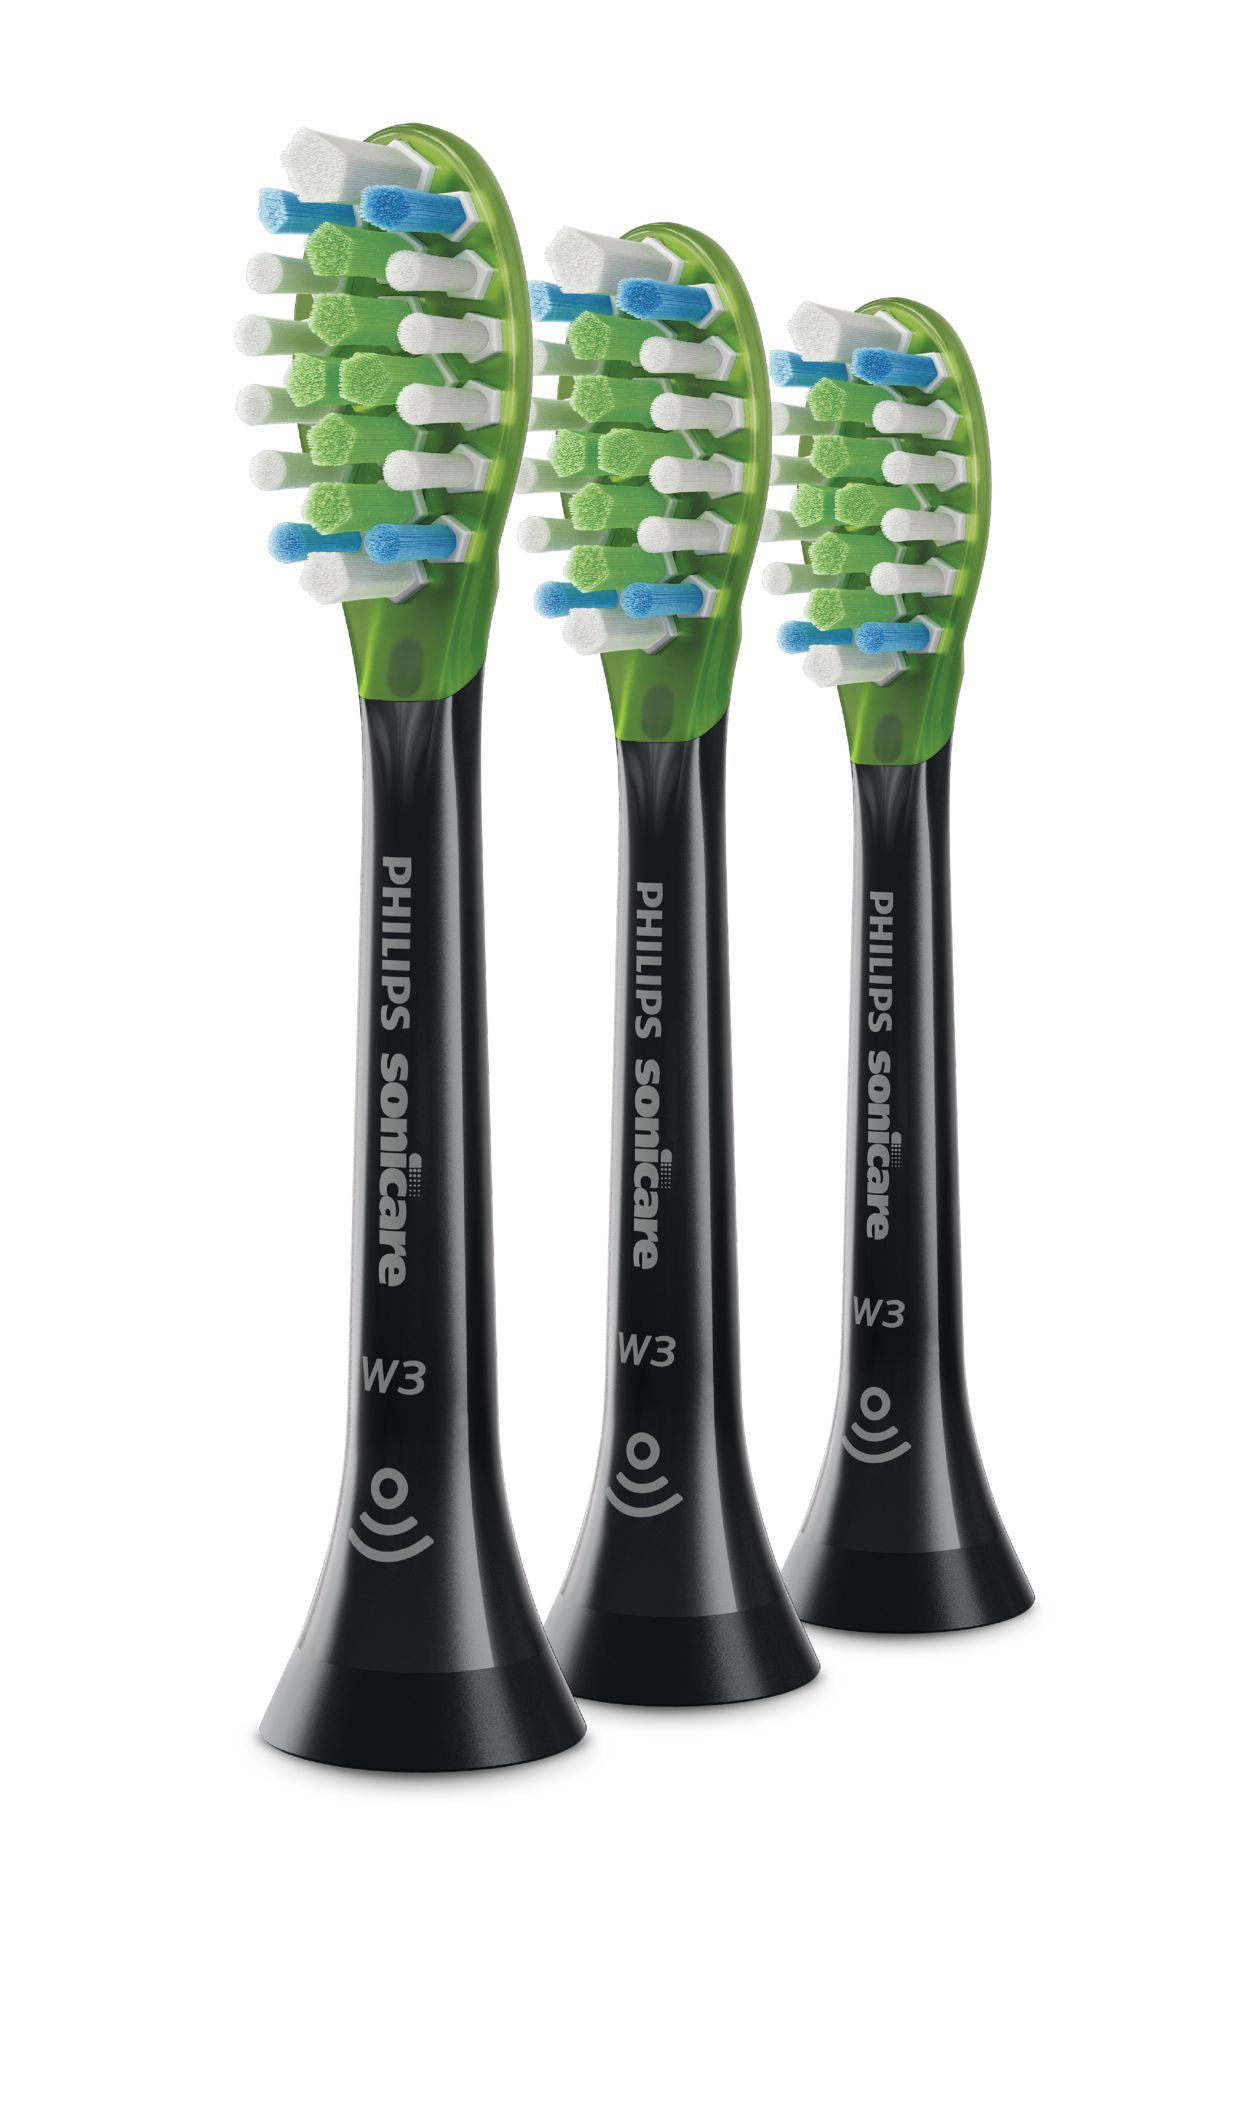 W3 Premium White Standard sonic toothbrush heads HX9063/96 | Sonicare